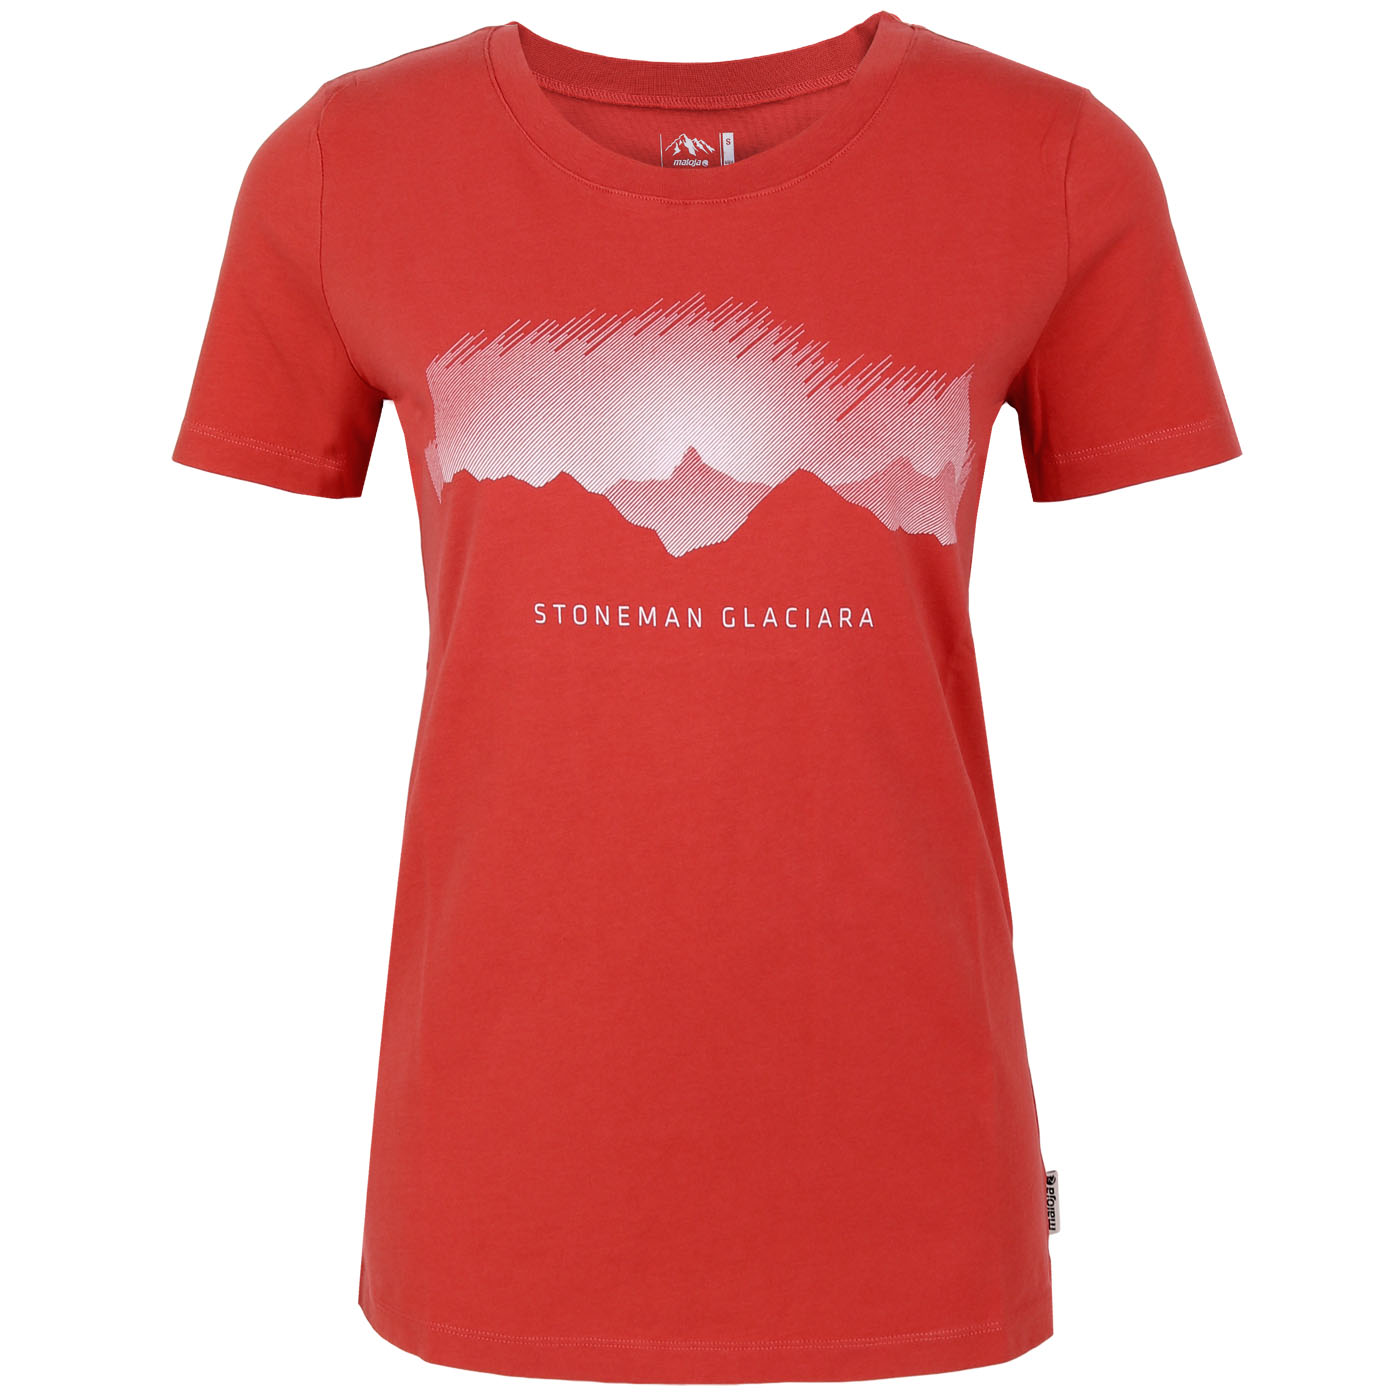 Produktbild von Stoneman Glaciara »Gipfelsturm« Damen T-Shirt by Maloja - vintage red